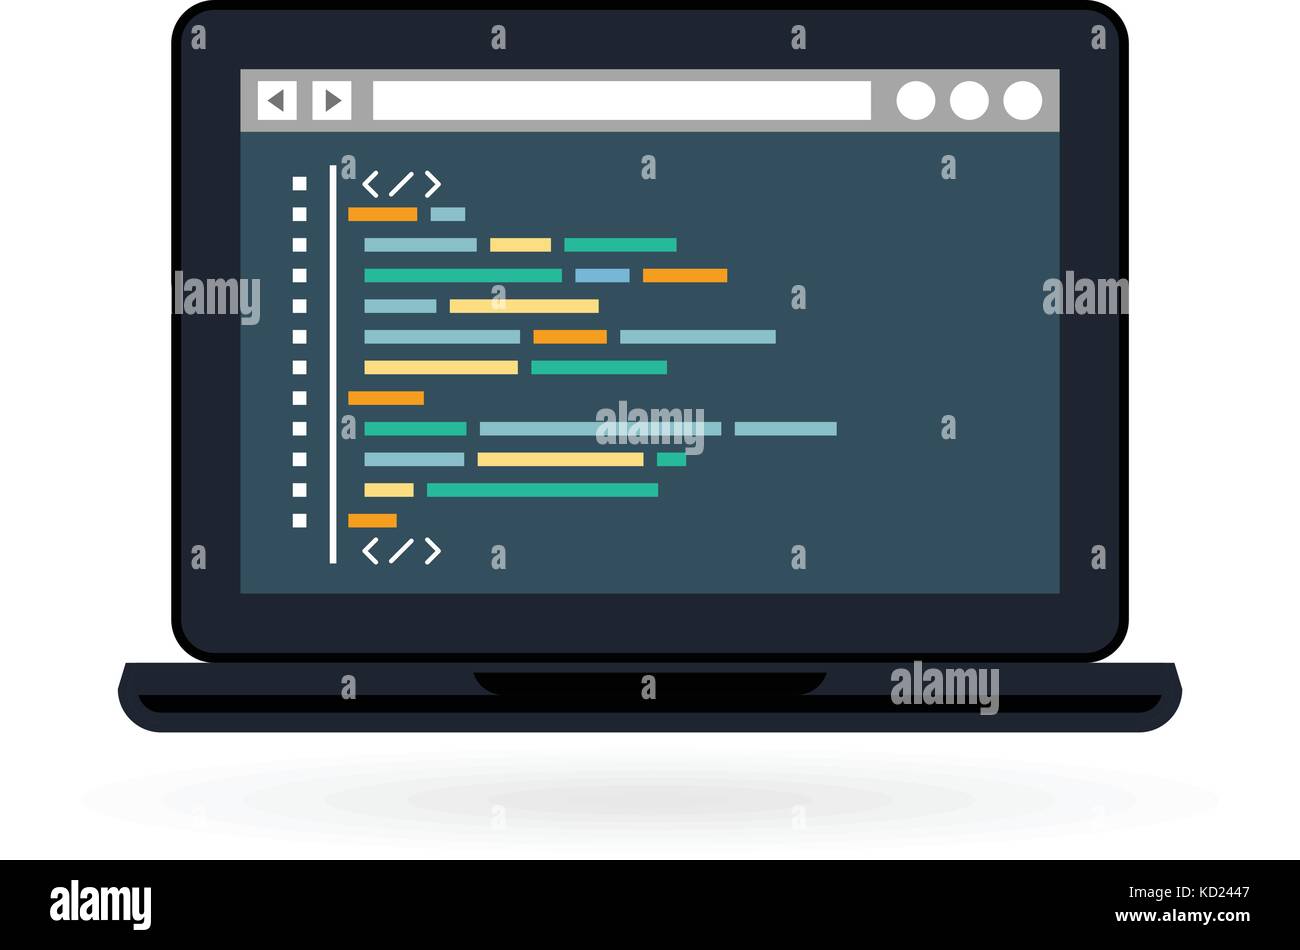 Programmierung und Kodierung der icon-Web site Entwicklung auf dem Laptop Bildschirm Stock Vektor